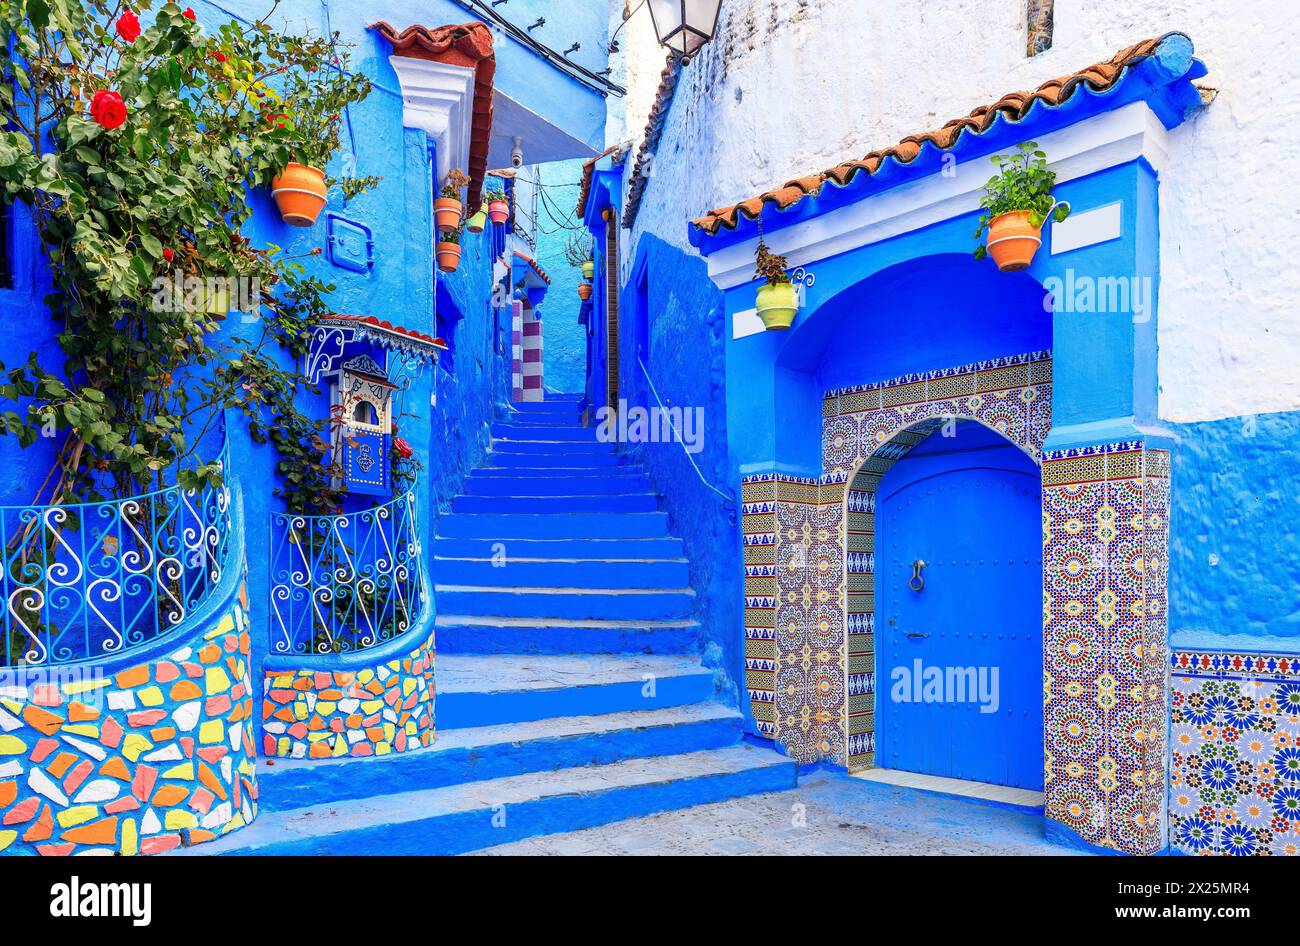 Chefchaouen, Marokko. Die alte ummauerte Stadt oder Medina mit ihren traditionellen Häusern in Blau und weiß. Stockfoto